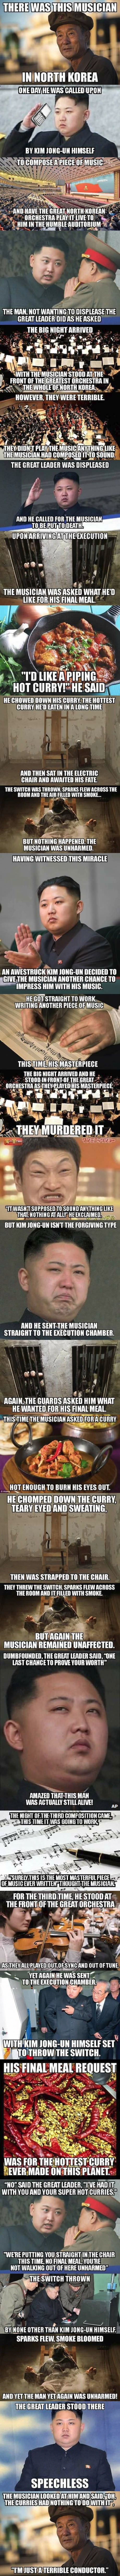 Kim Jong-un vs The Musician